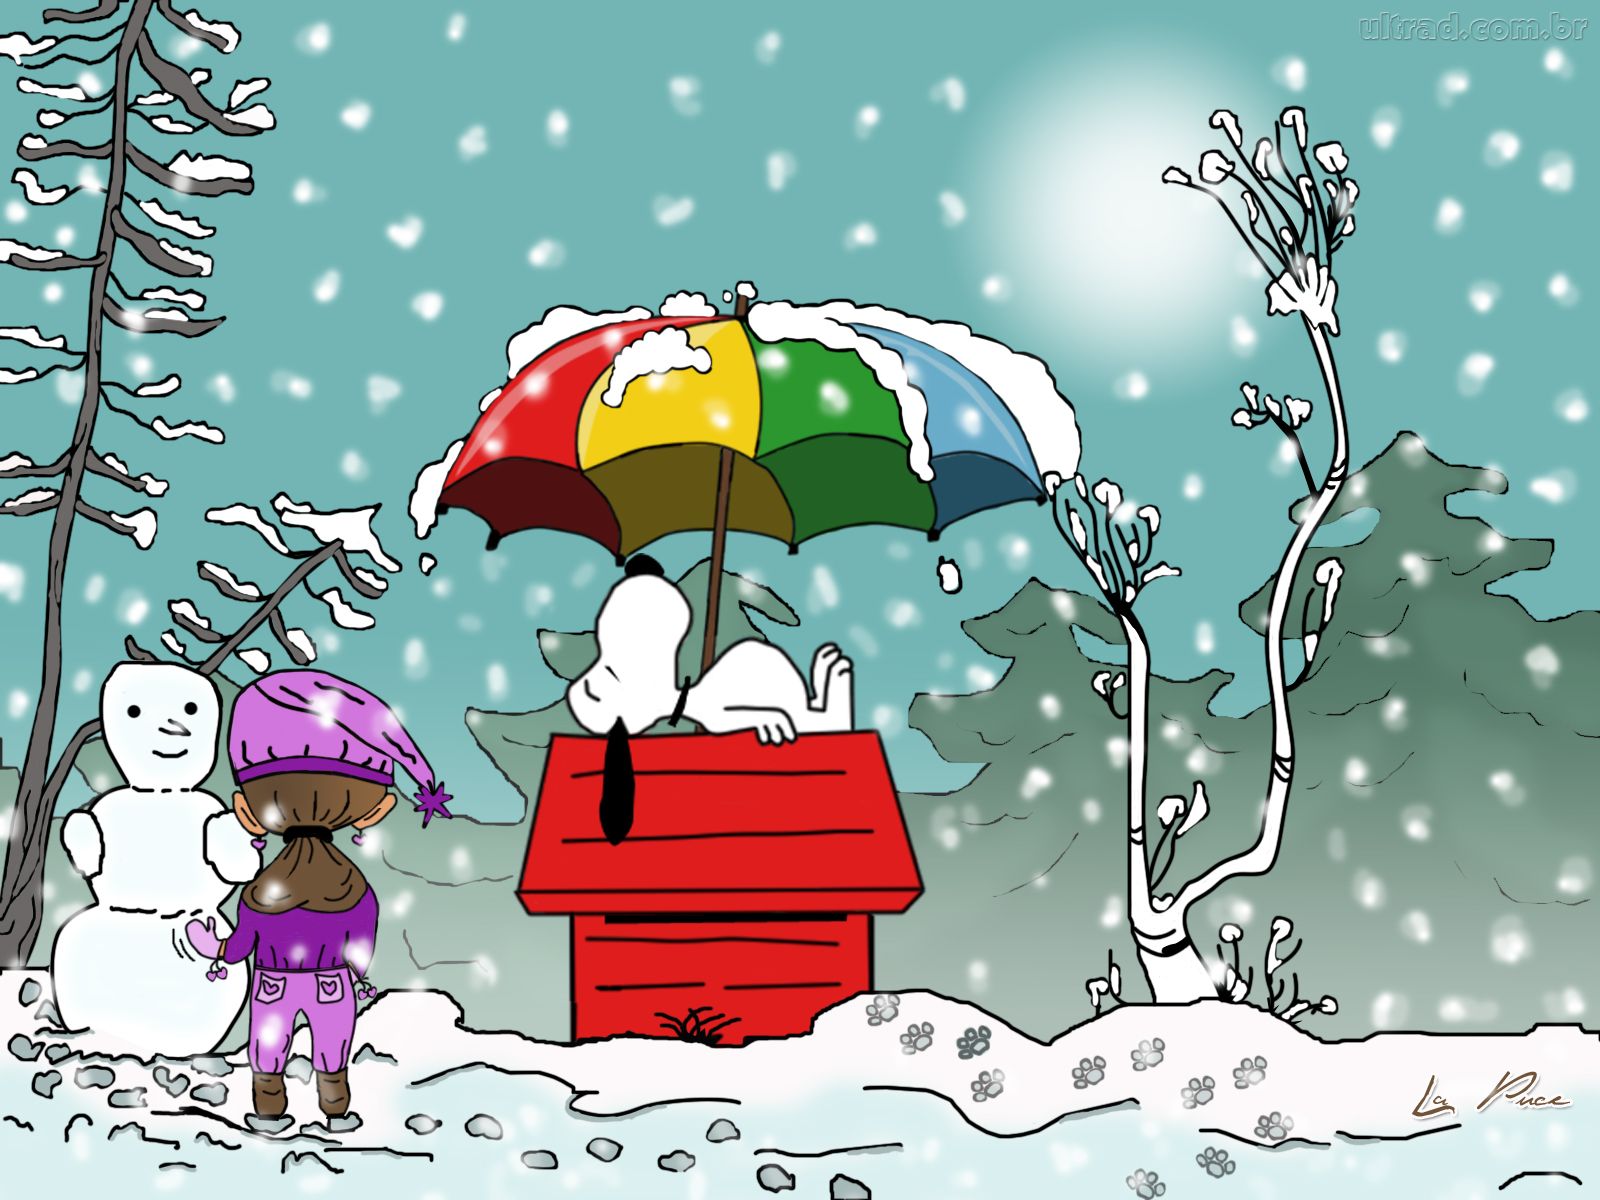 carta da parati snoopy di natale,cartone animato,illustrazione,inverno,vigilia di natale,albero